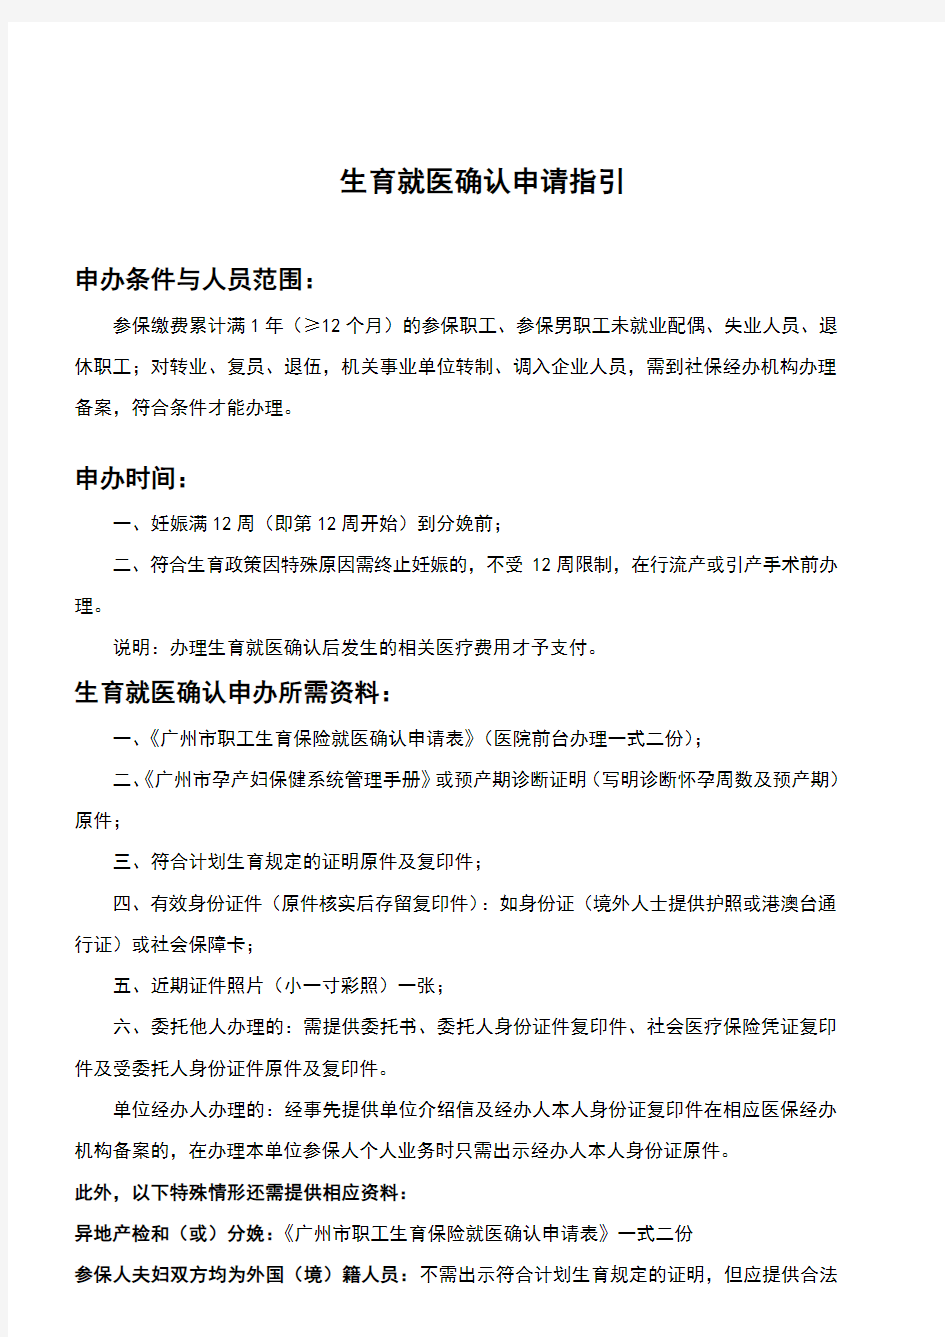 广州市职工生育保险就医确认申请表(2018)